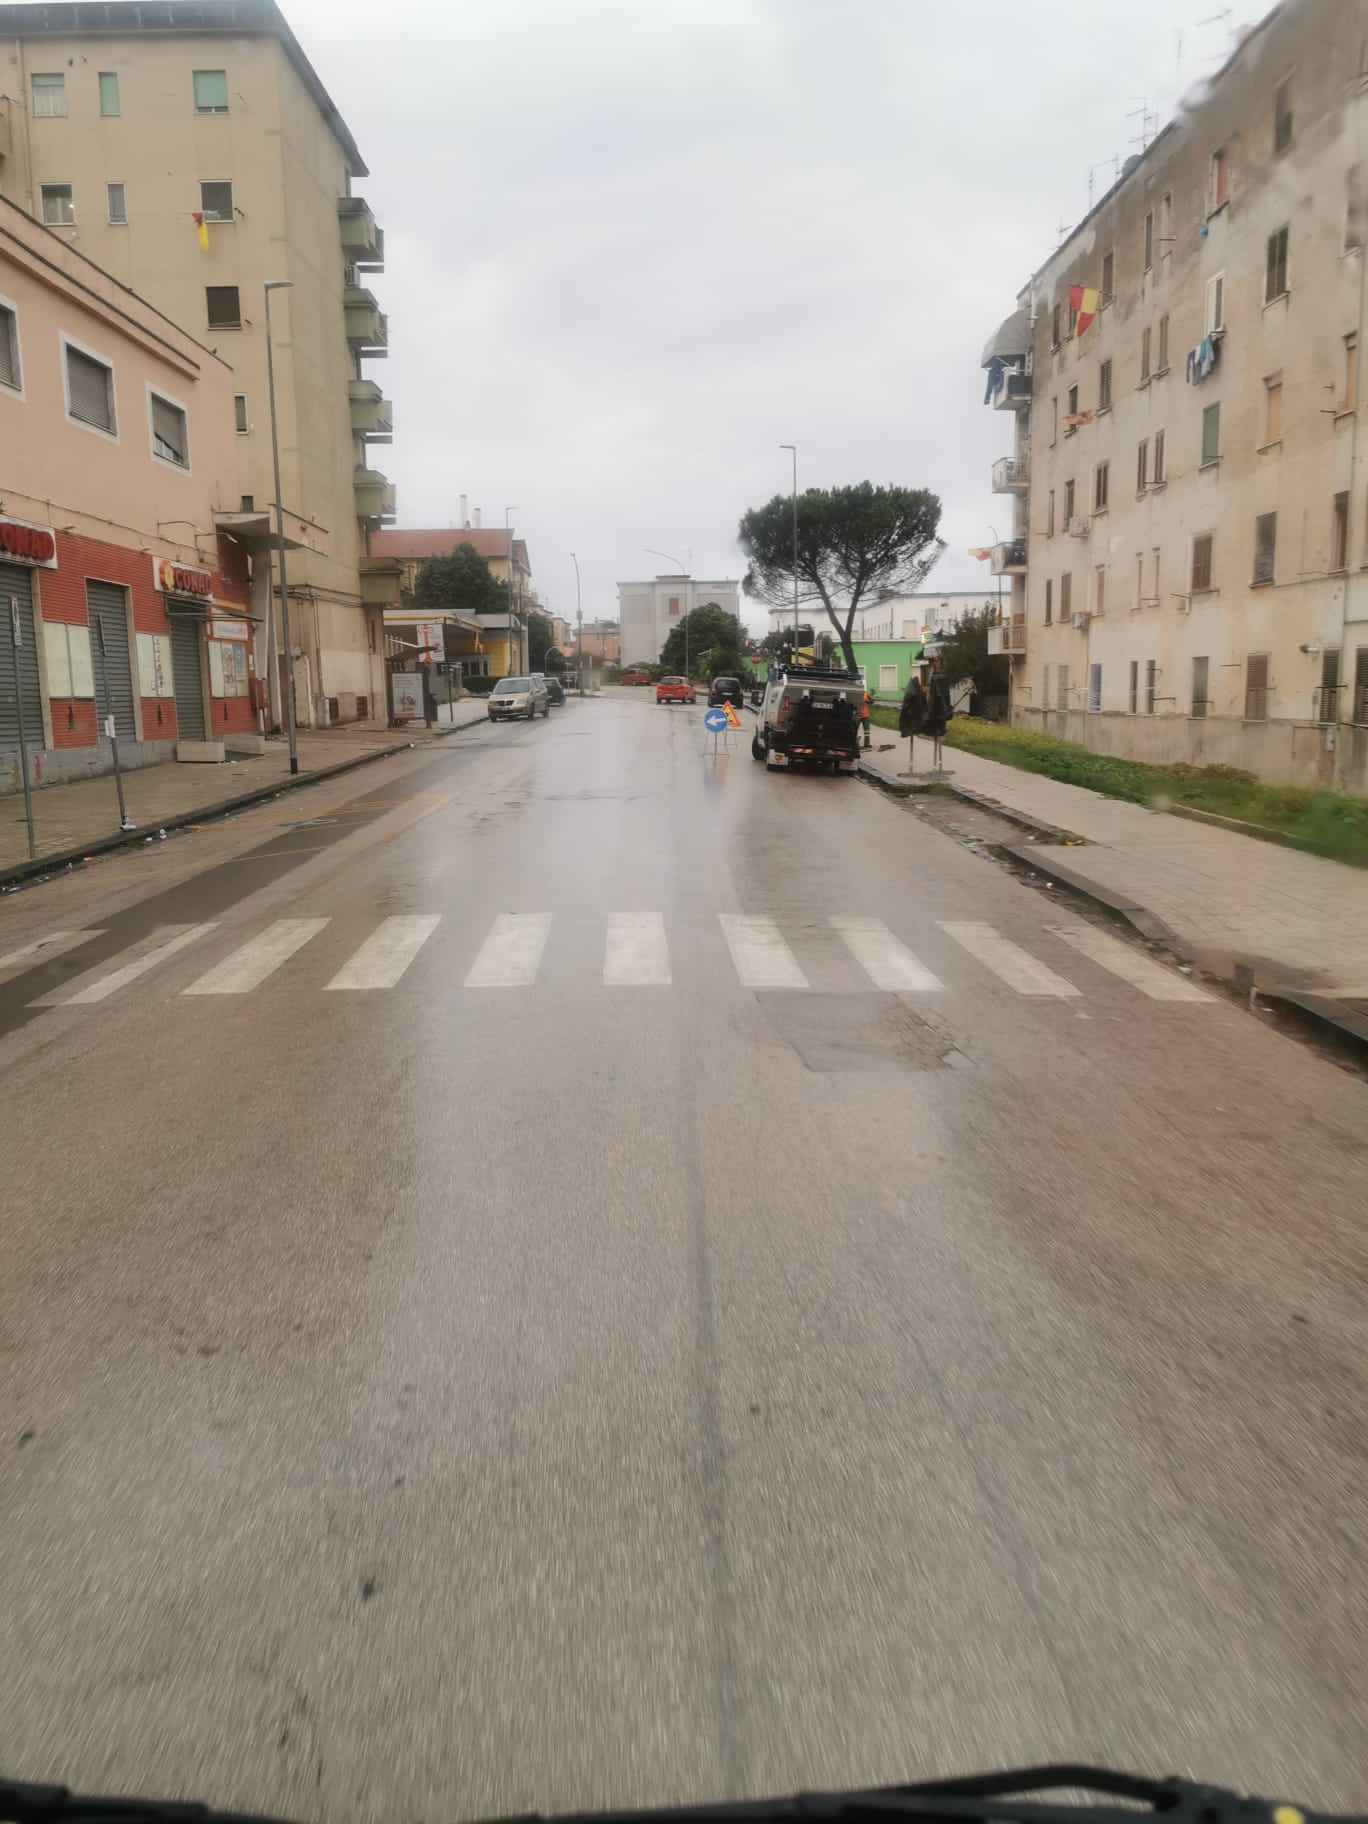 Benevento| Asia, avviata questa mattina la sanificazione delle strade cittadine